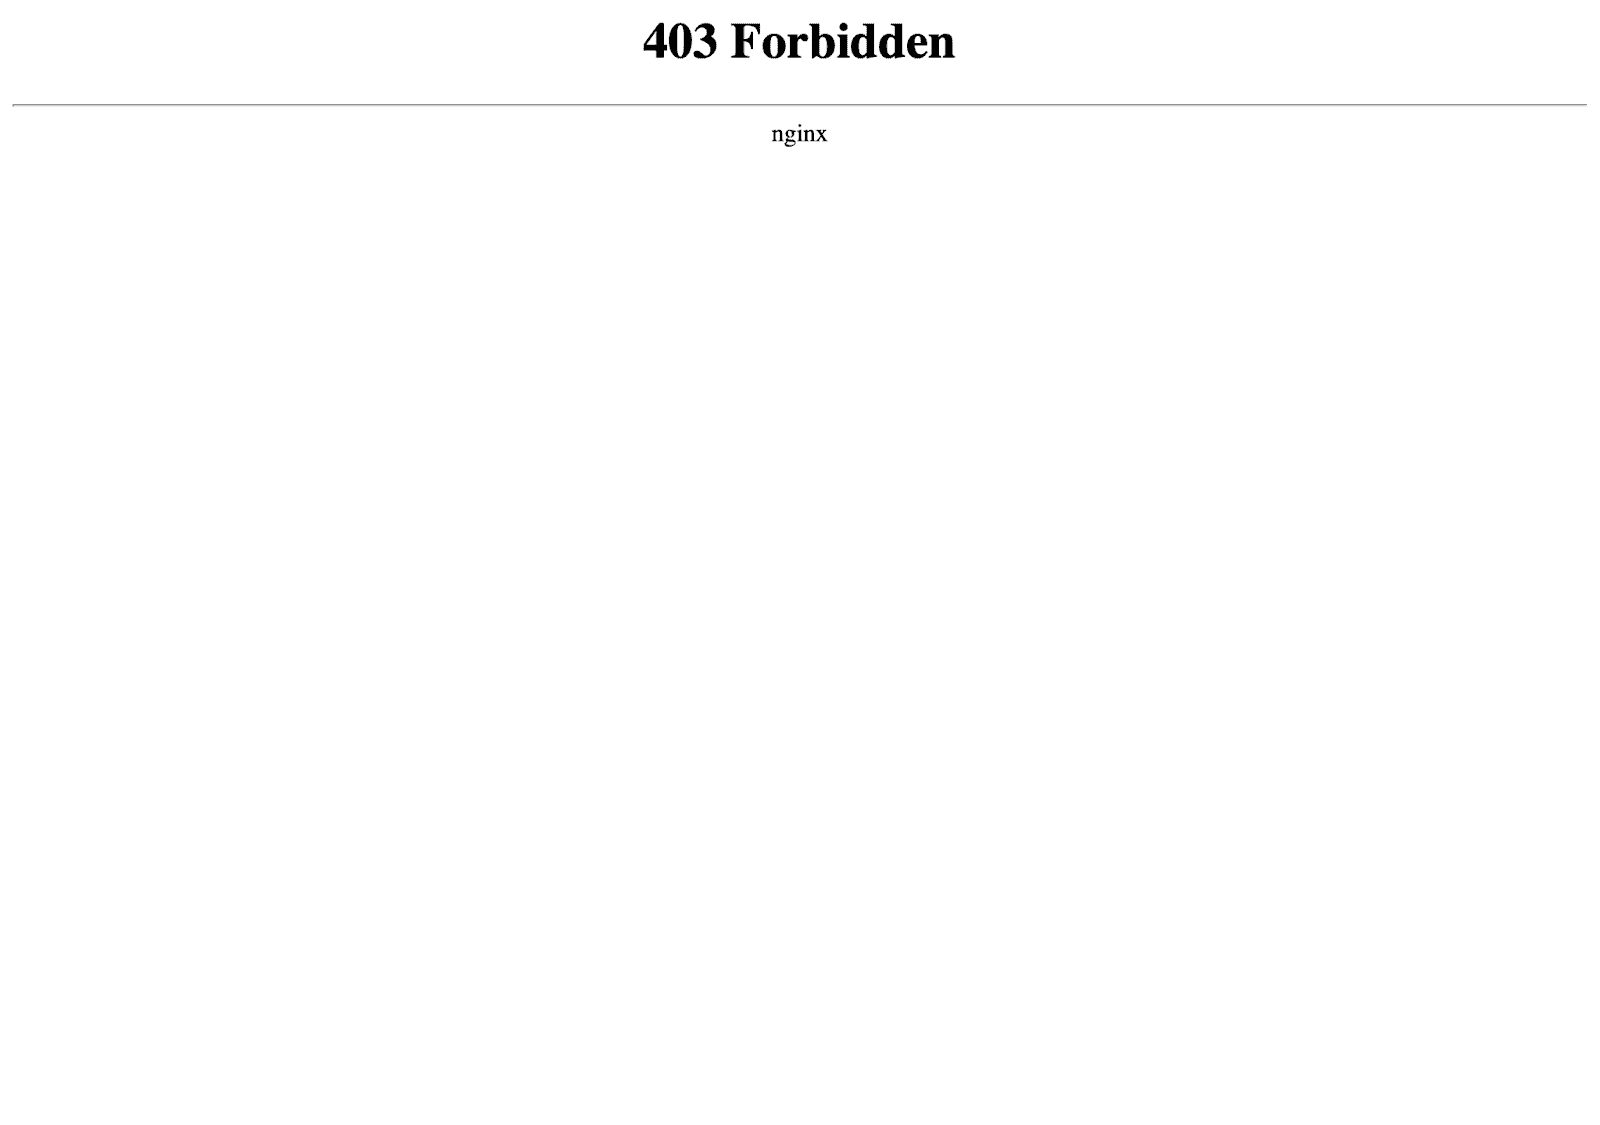 nginxが返す403 Forbiddenエラーページ